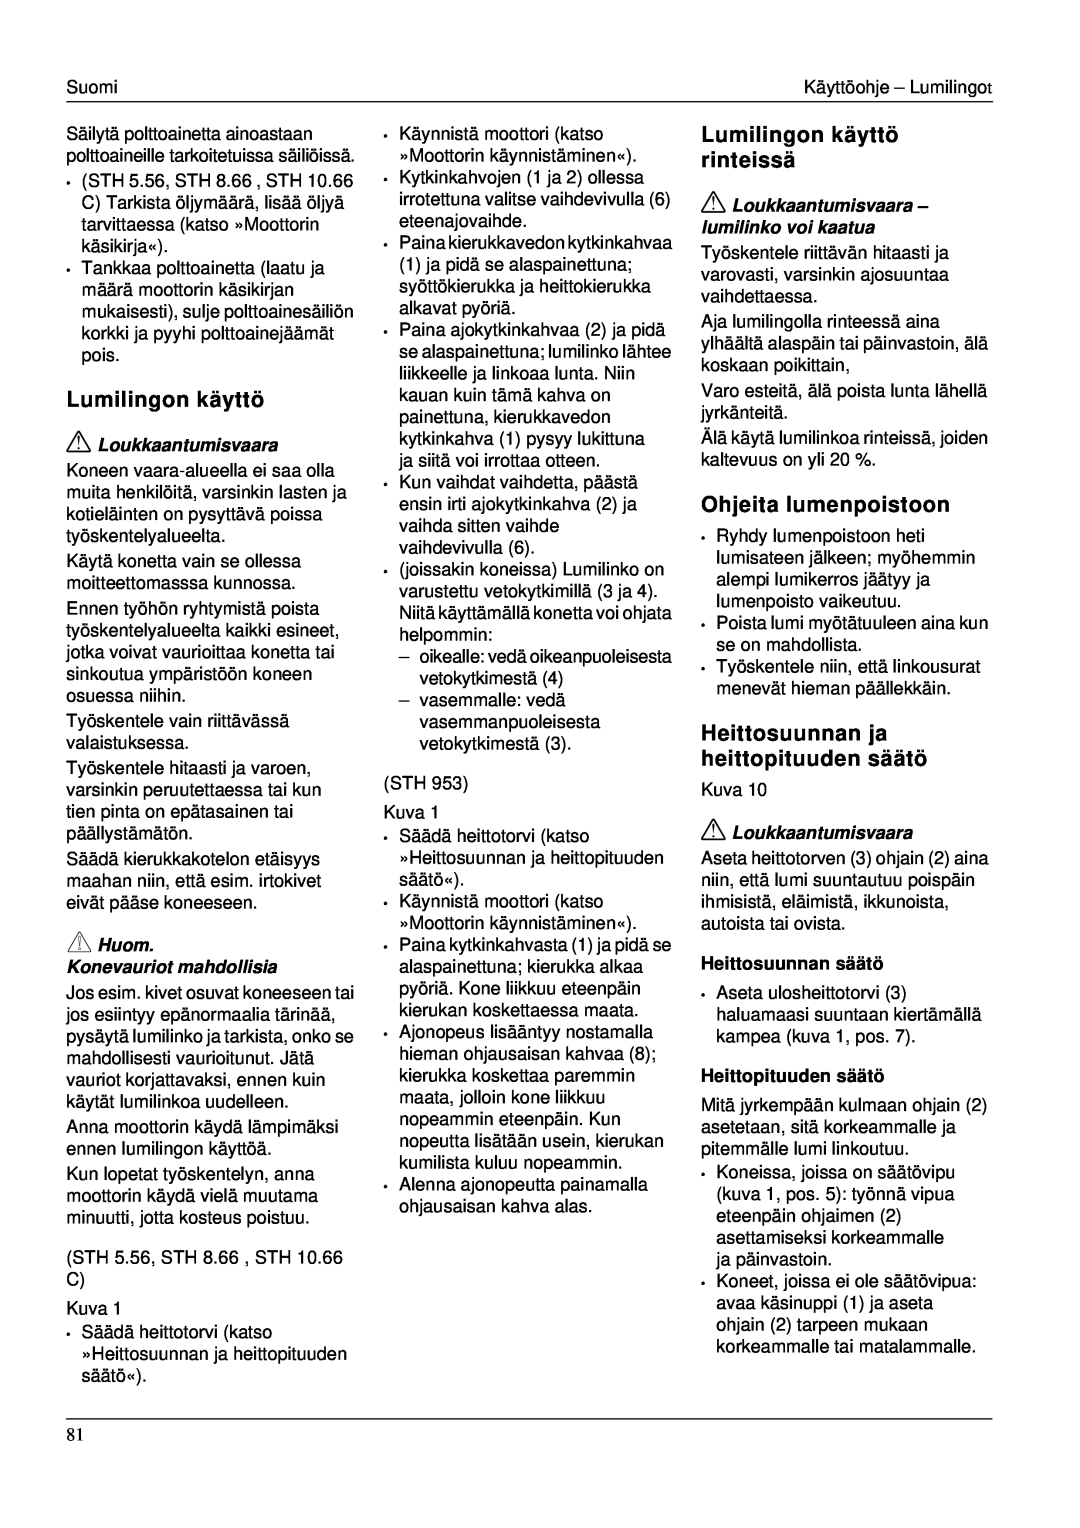 Karcher STH 953 manual Lumilingon käyttö rinteissä, Ohjeita lumenpoistoon, Heittosuunnan ja heittopituuden säätö 